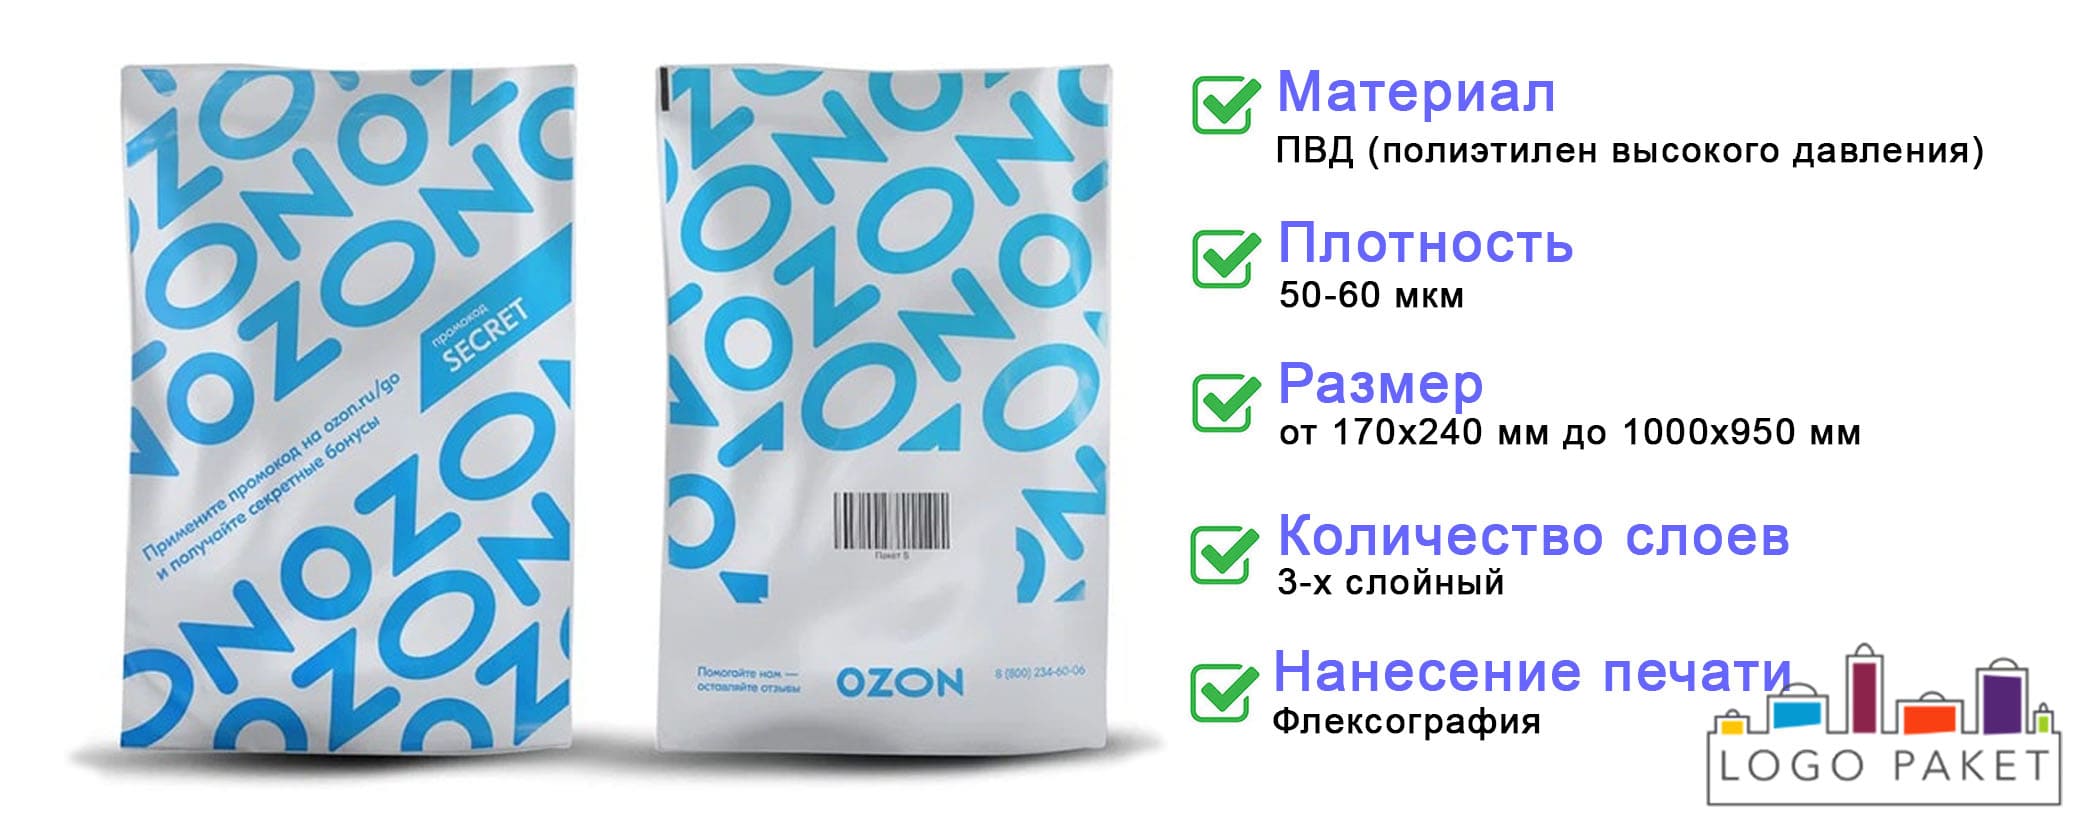 Курьерские пакеты для Озон инфографика